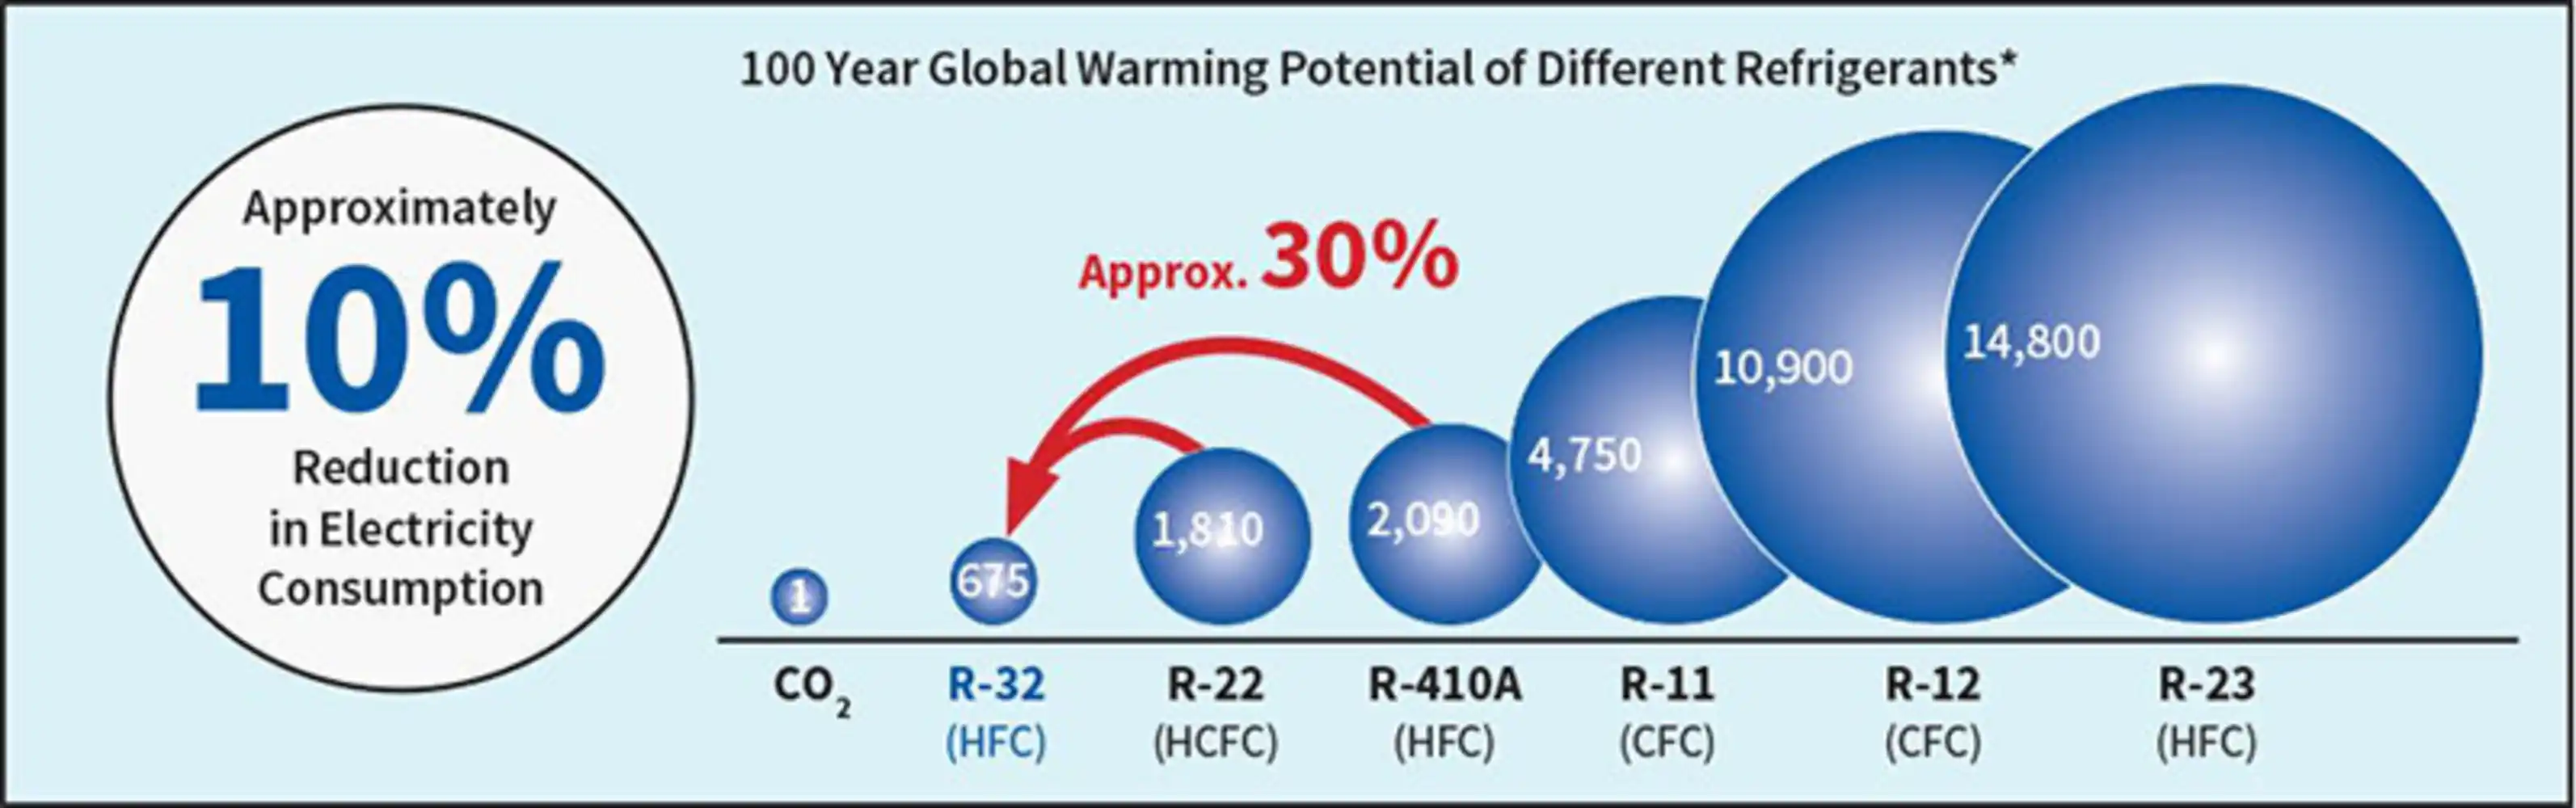 Nowe wymogi w zakresie czynników chłodniczych pompach ciepła - czeka nas rewolucja w branży?